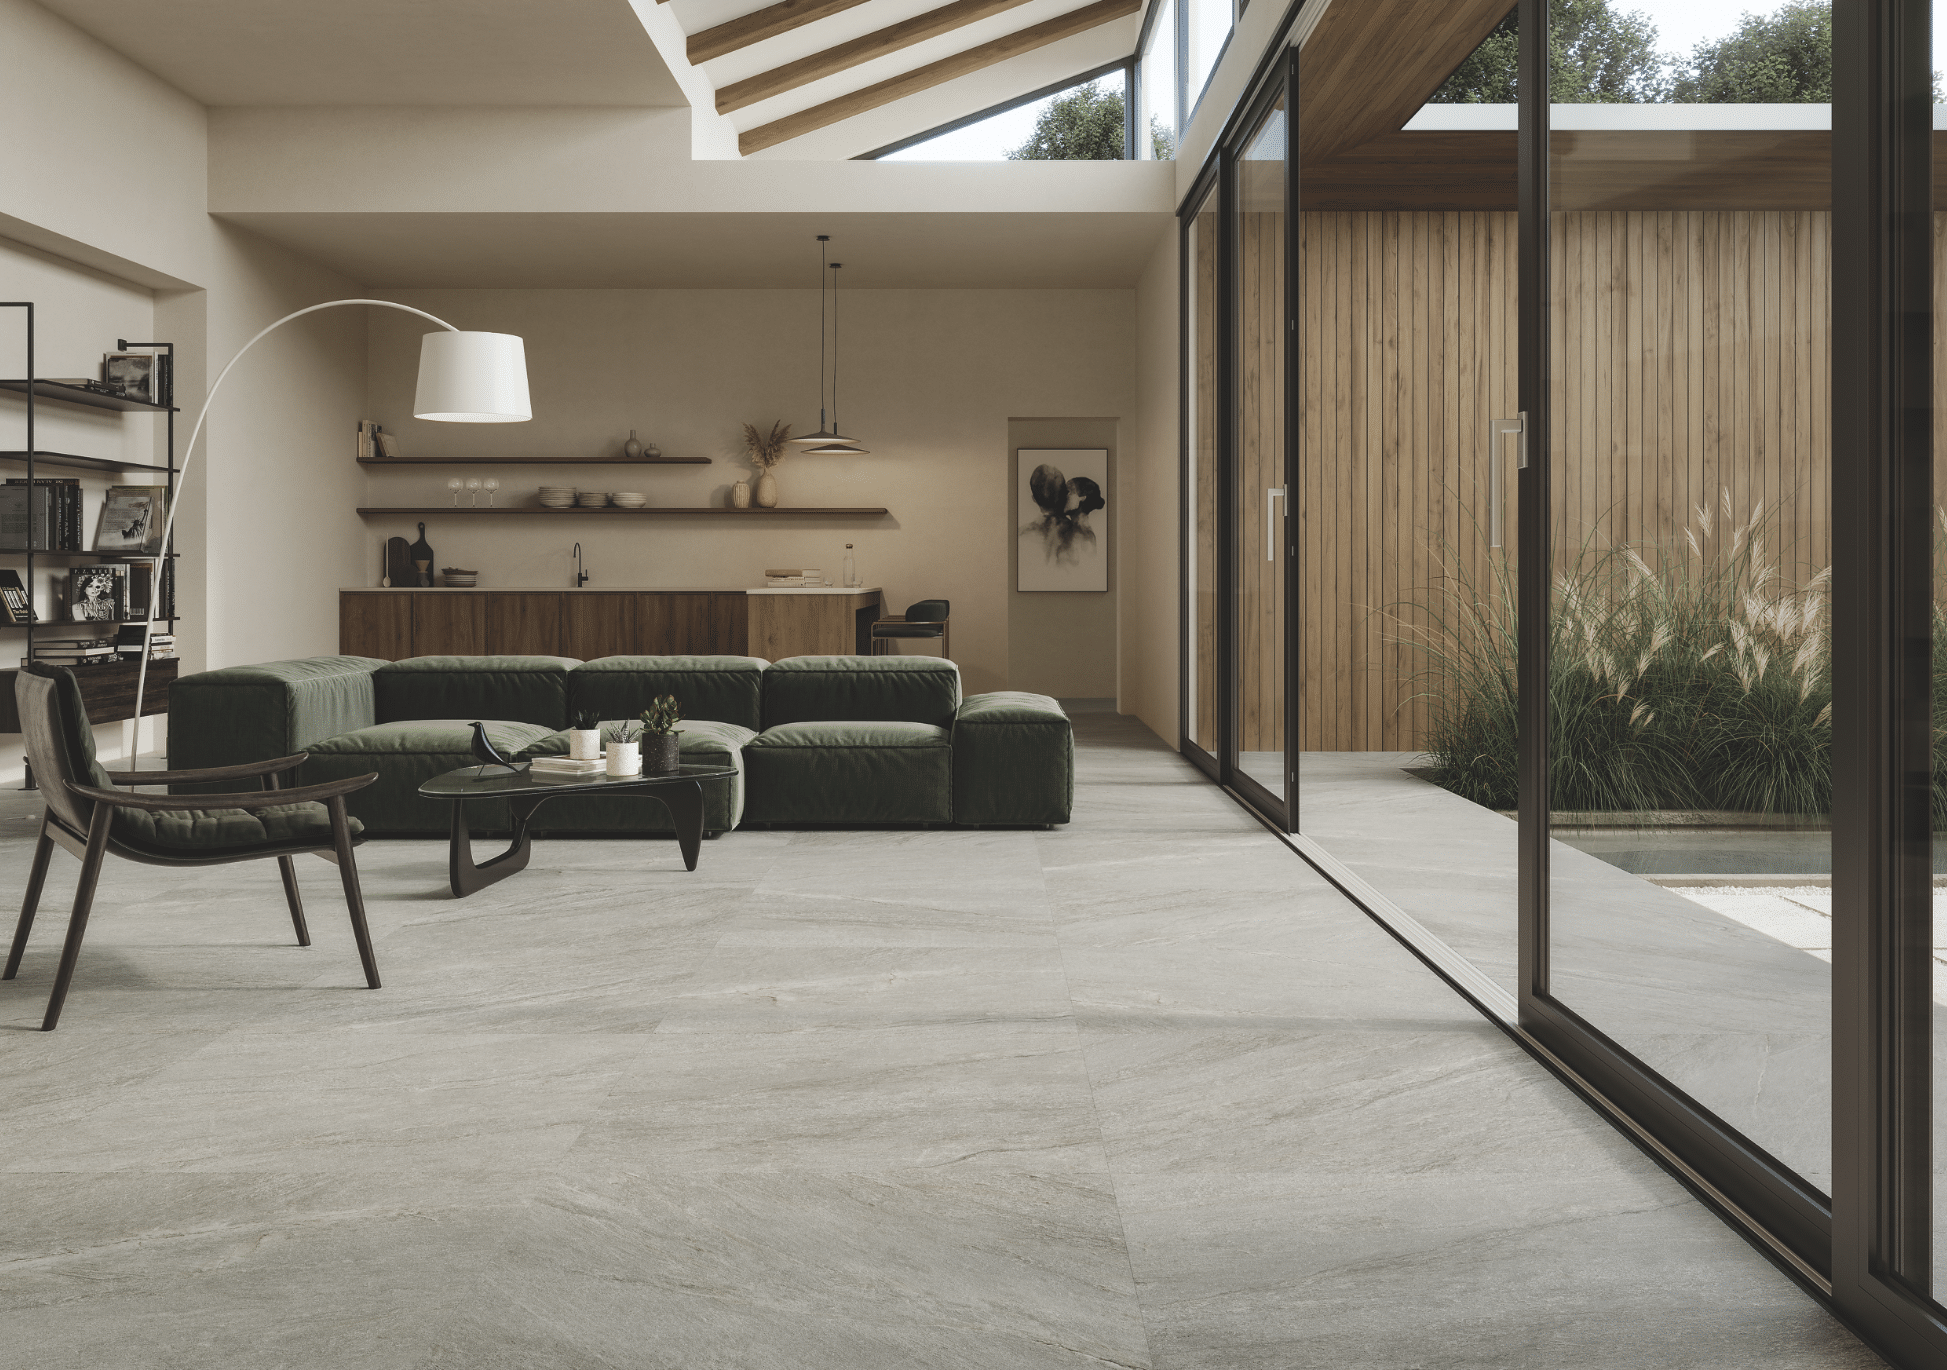 Fliesendorf zeigt ein modernes Wohnzimmer mit grauem Fliesenboden und großer Sitzlandschaft in dunklem grün und einer Glasschiebetür mit Zugang zur Terrasse mit vielen Pflanzen.